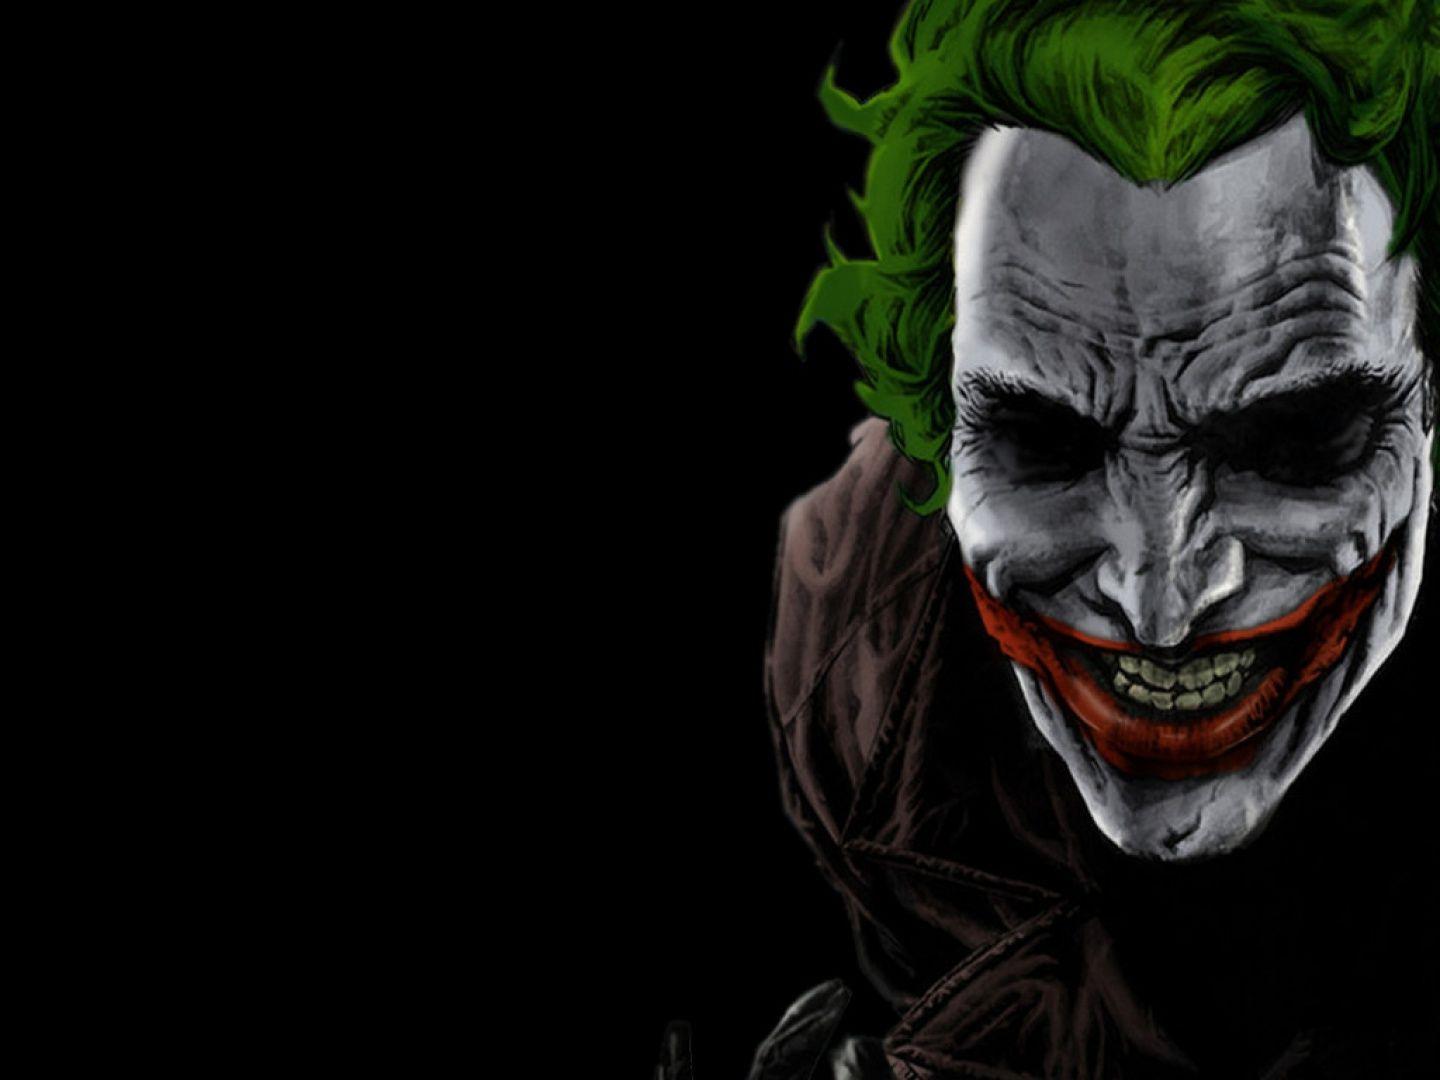 HD Wallpaper of Joker Mis Imagenes Del Guason De Batman Ngh Sick